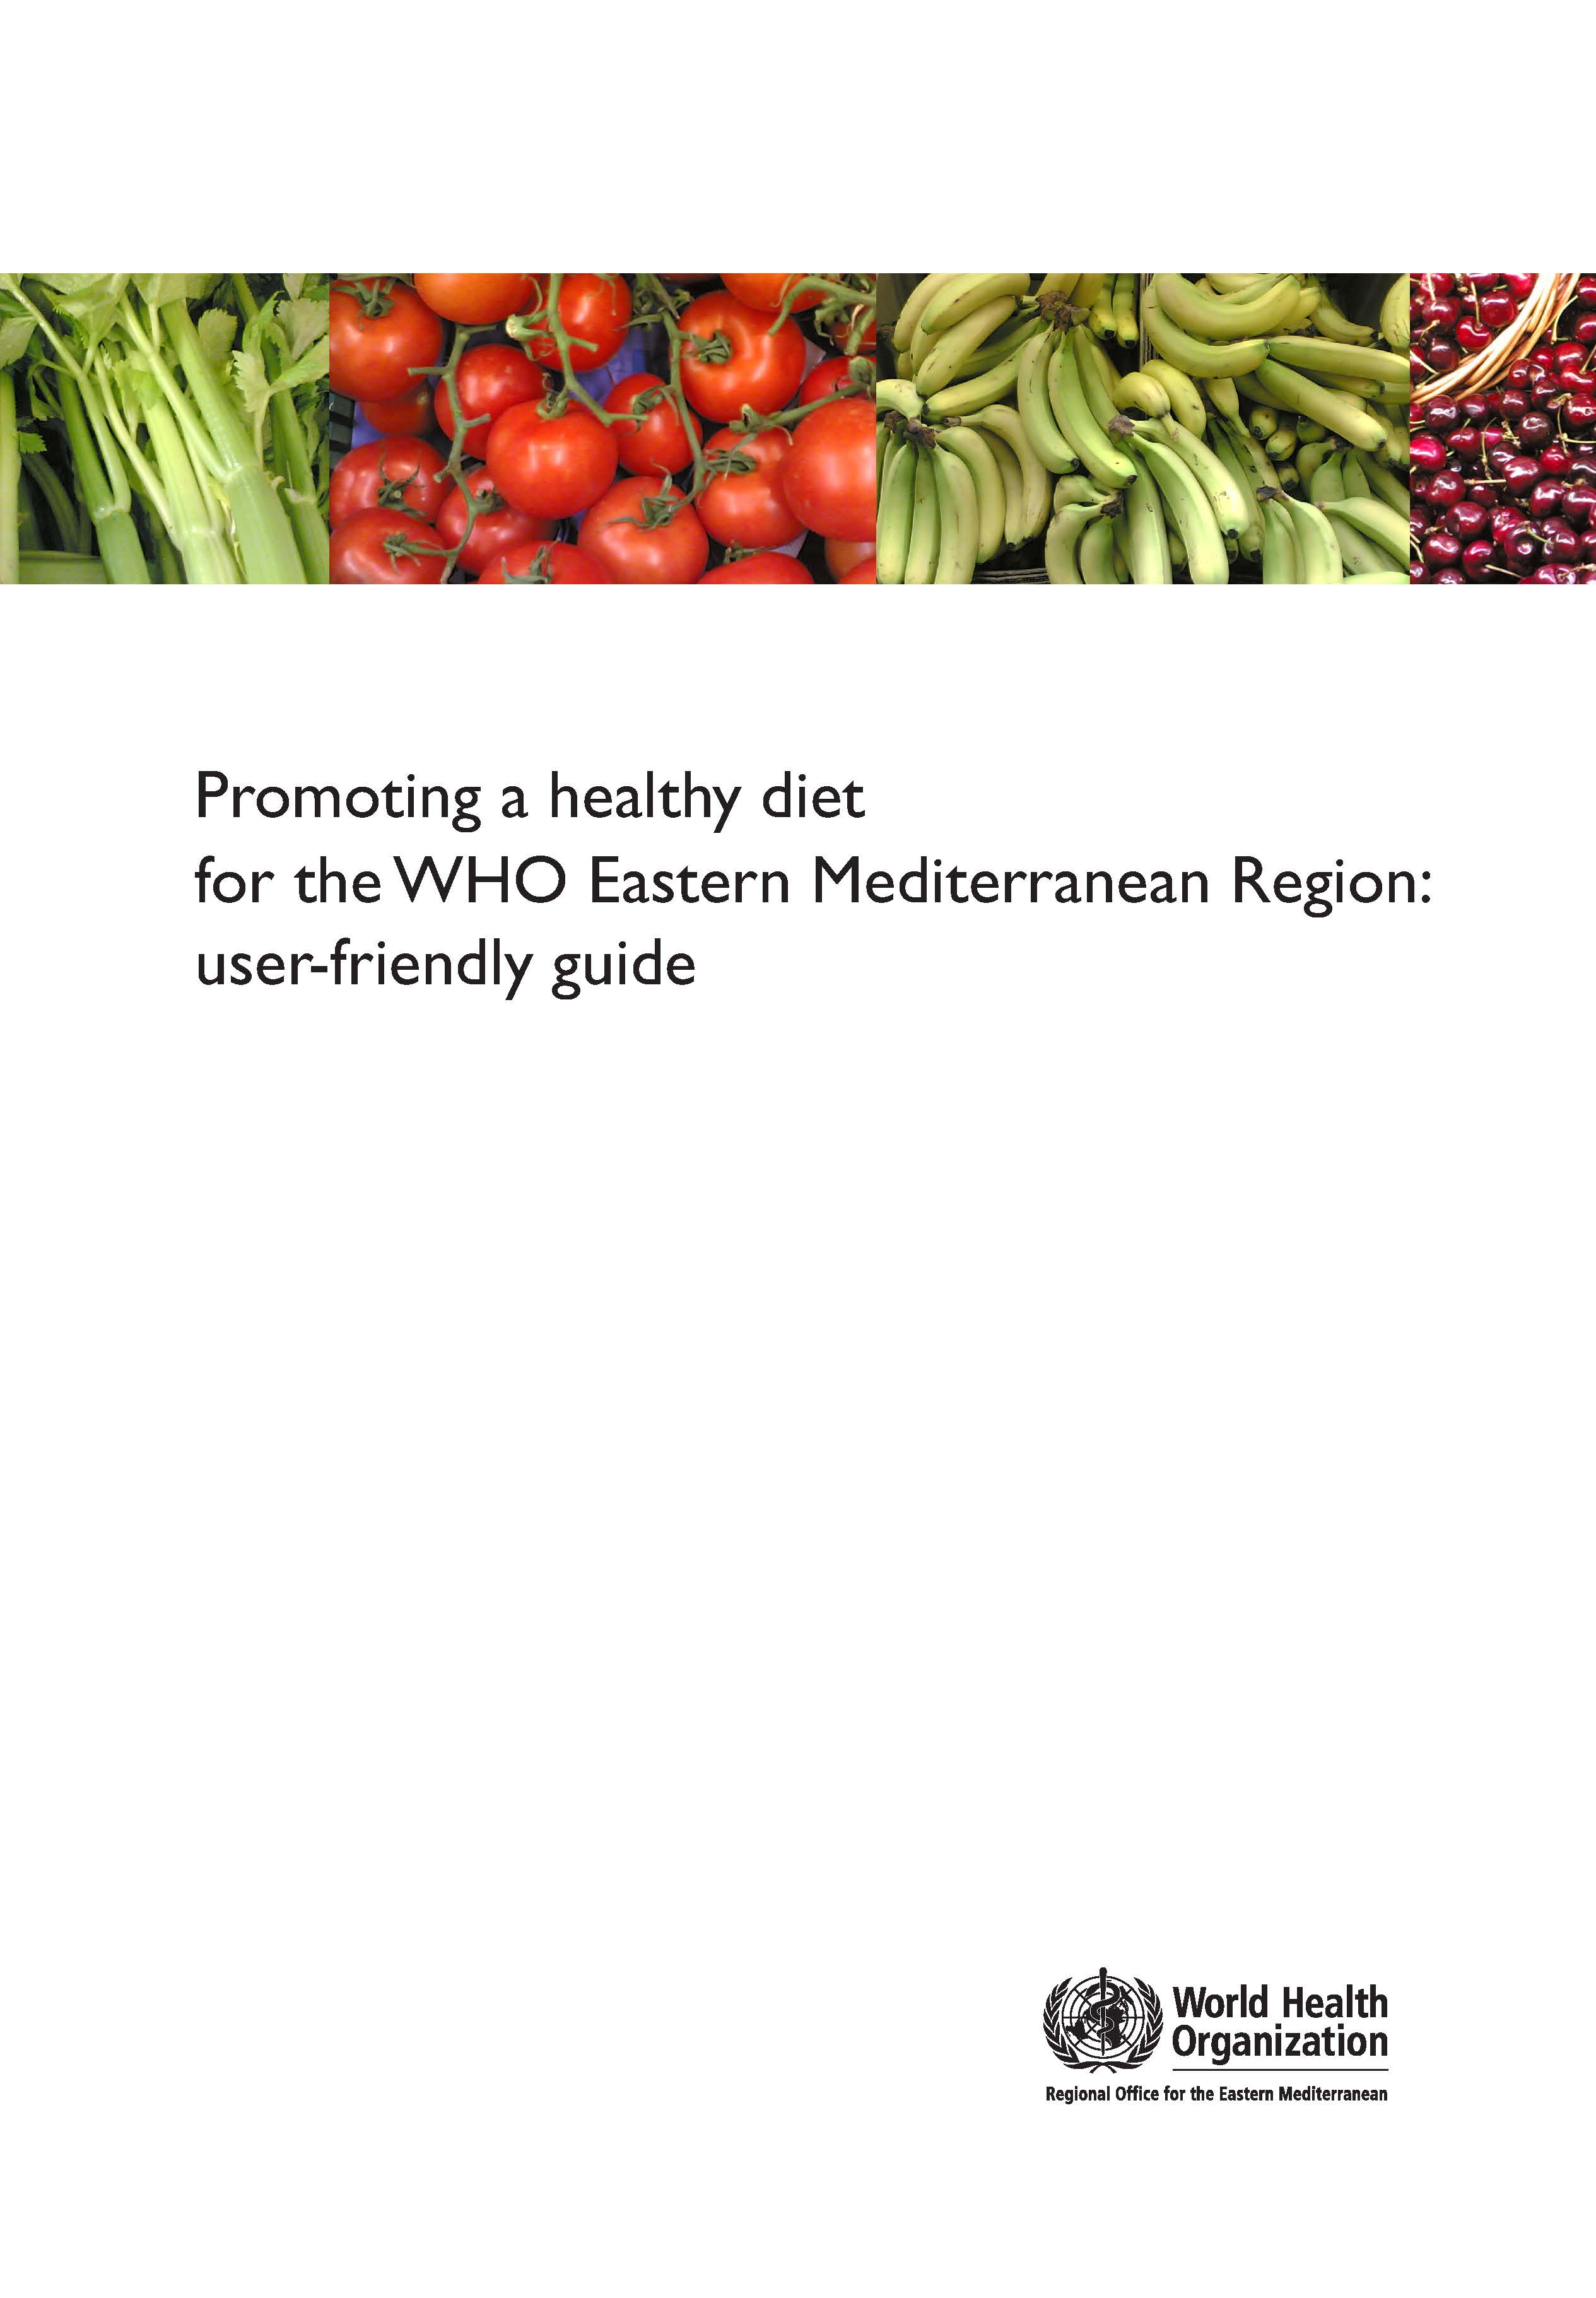 Healthy diet in EMR guide